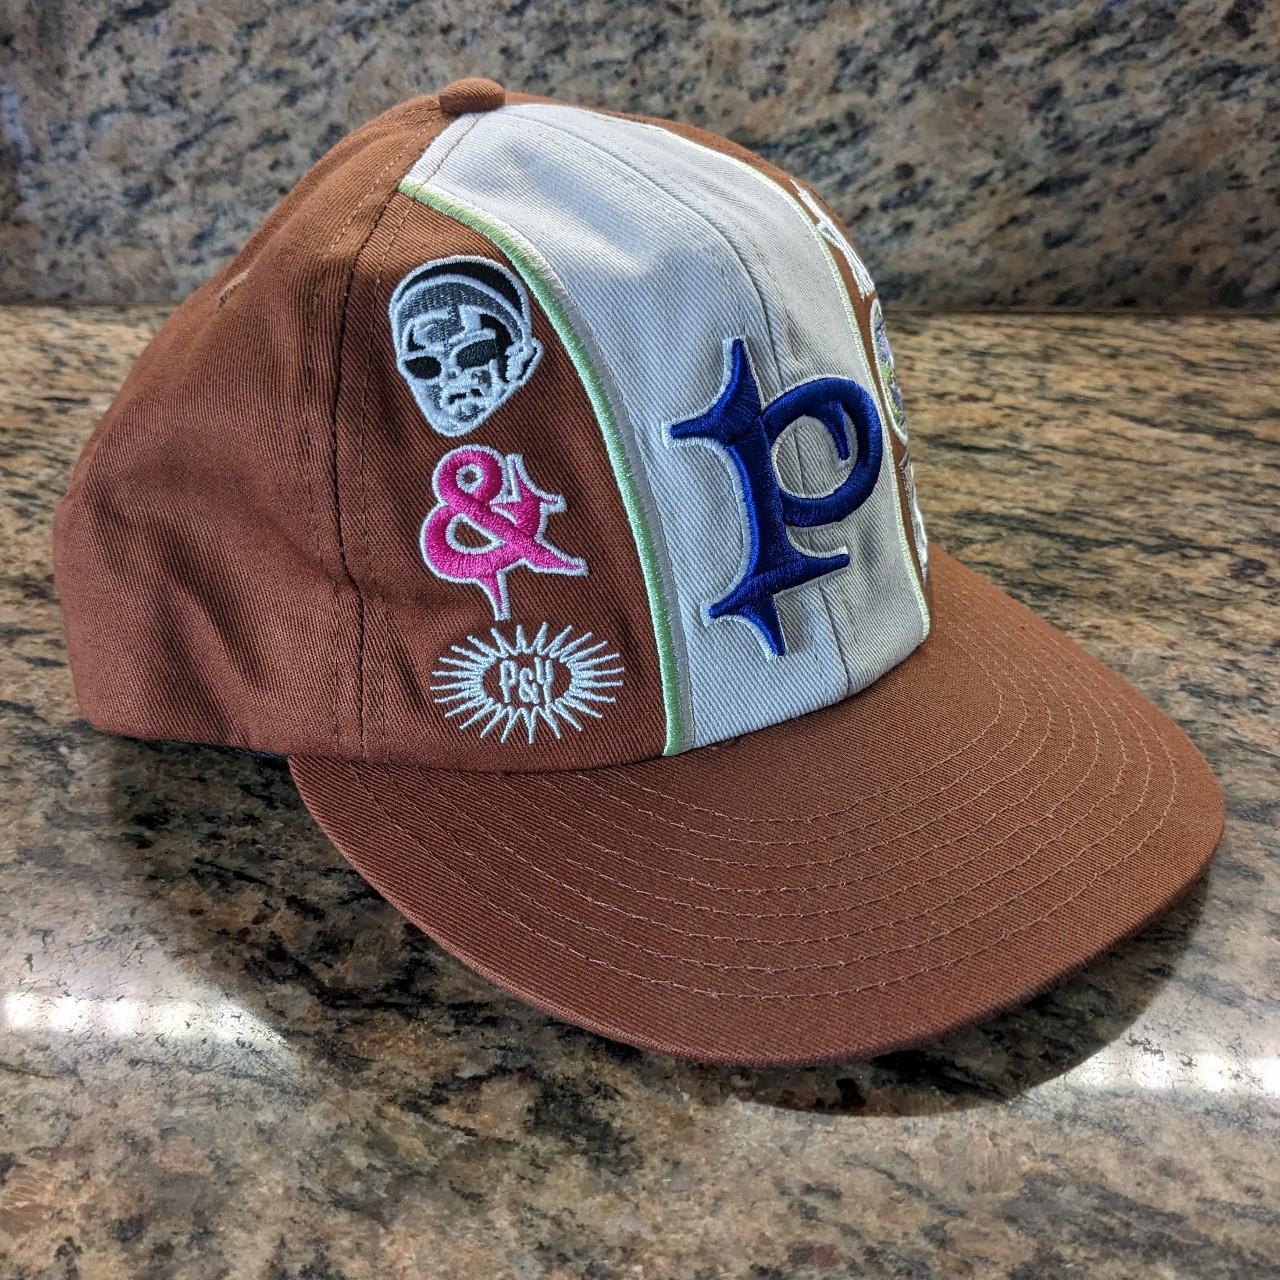 Punkandyoキャップ - 帽子